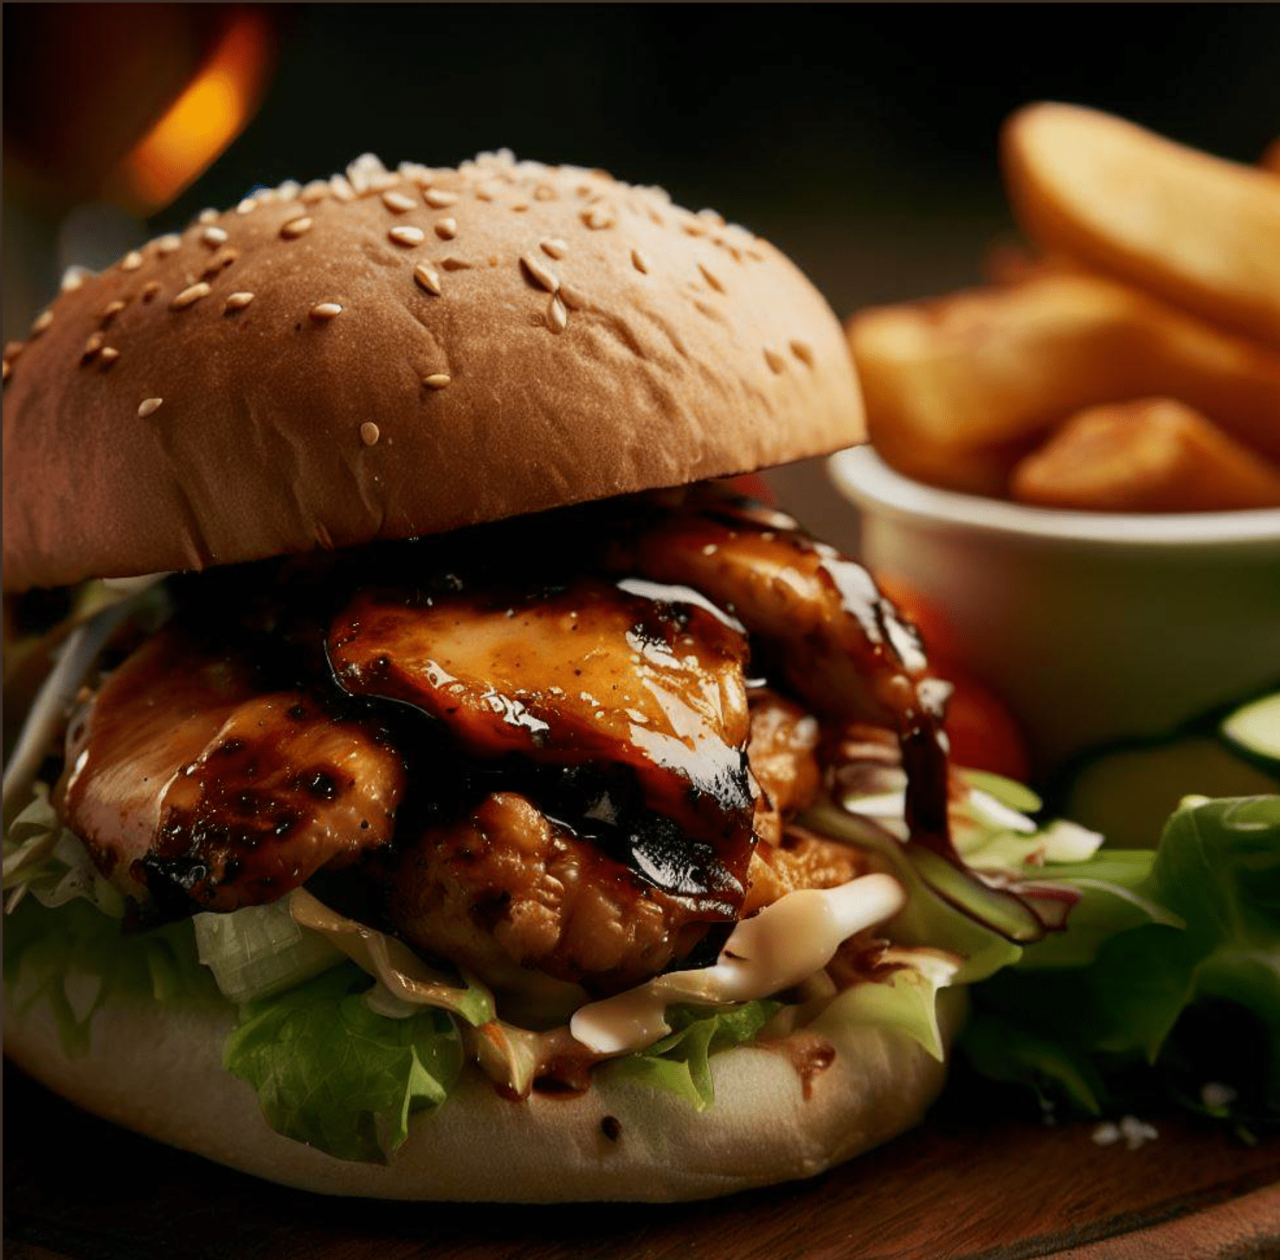 BBQ Chicken Burger - Quick Dinner with Pre-Glazed Chicken Breast